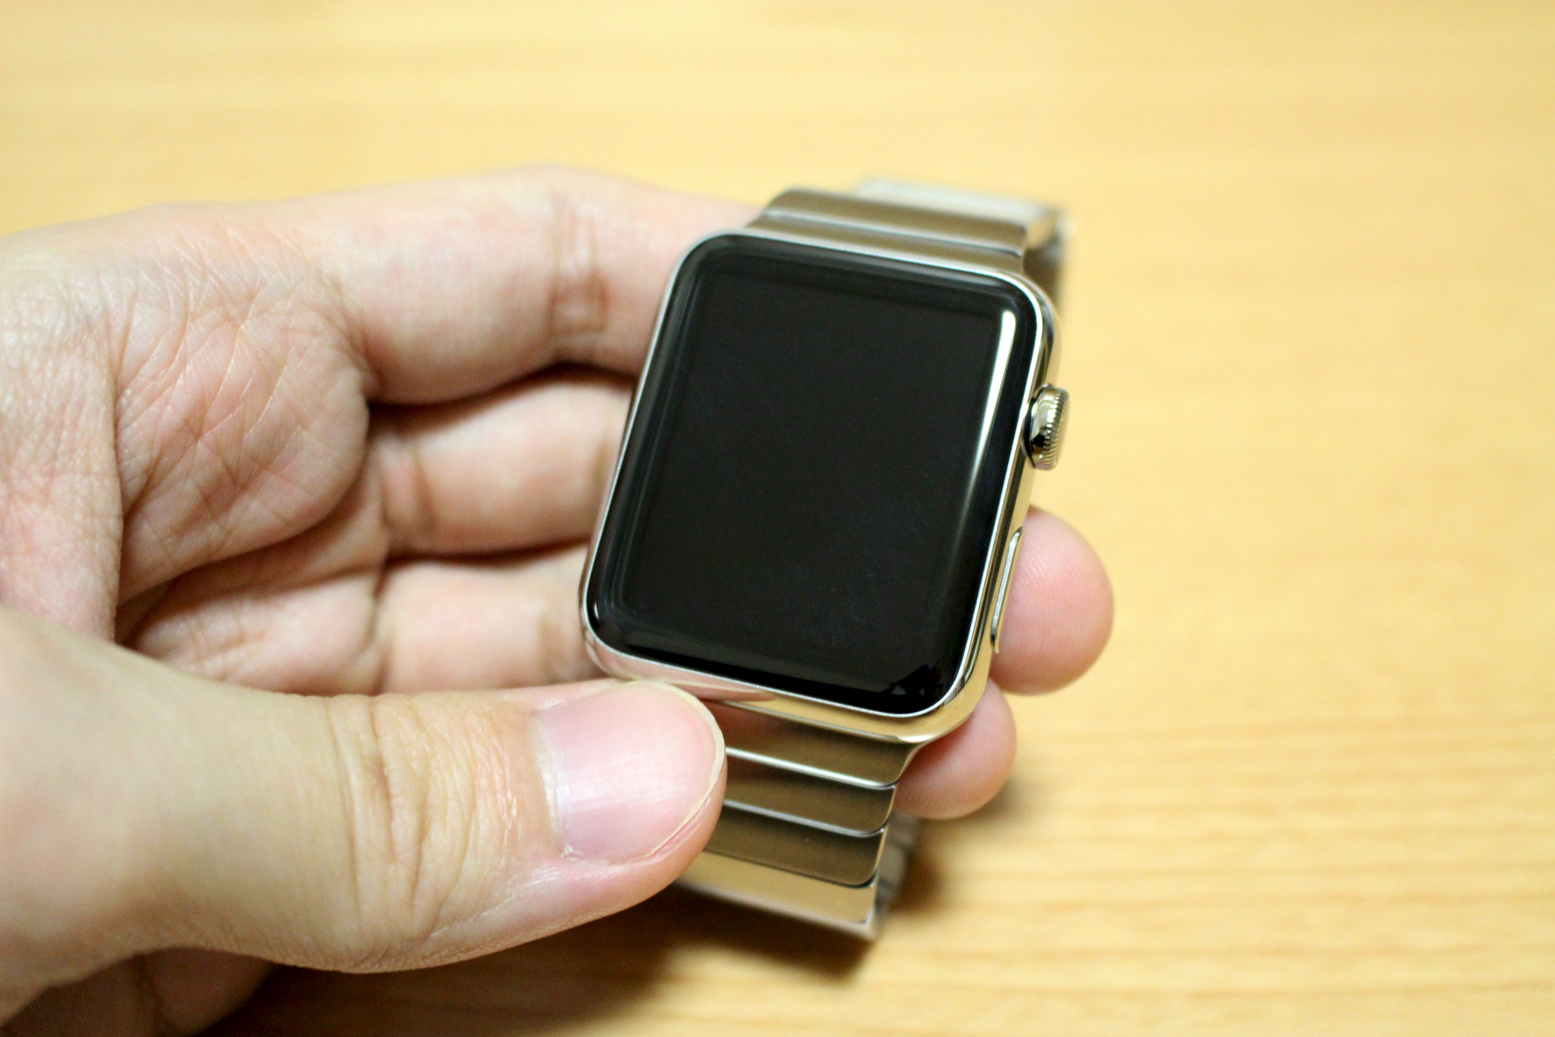 Apple Watchが届いたのでさっそく装着してみたら自分の腕の細さに笑っ 